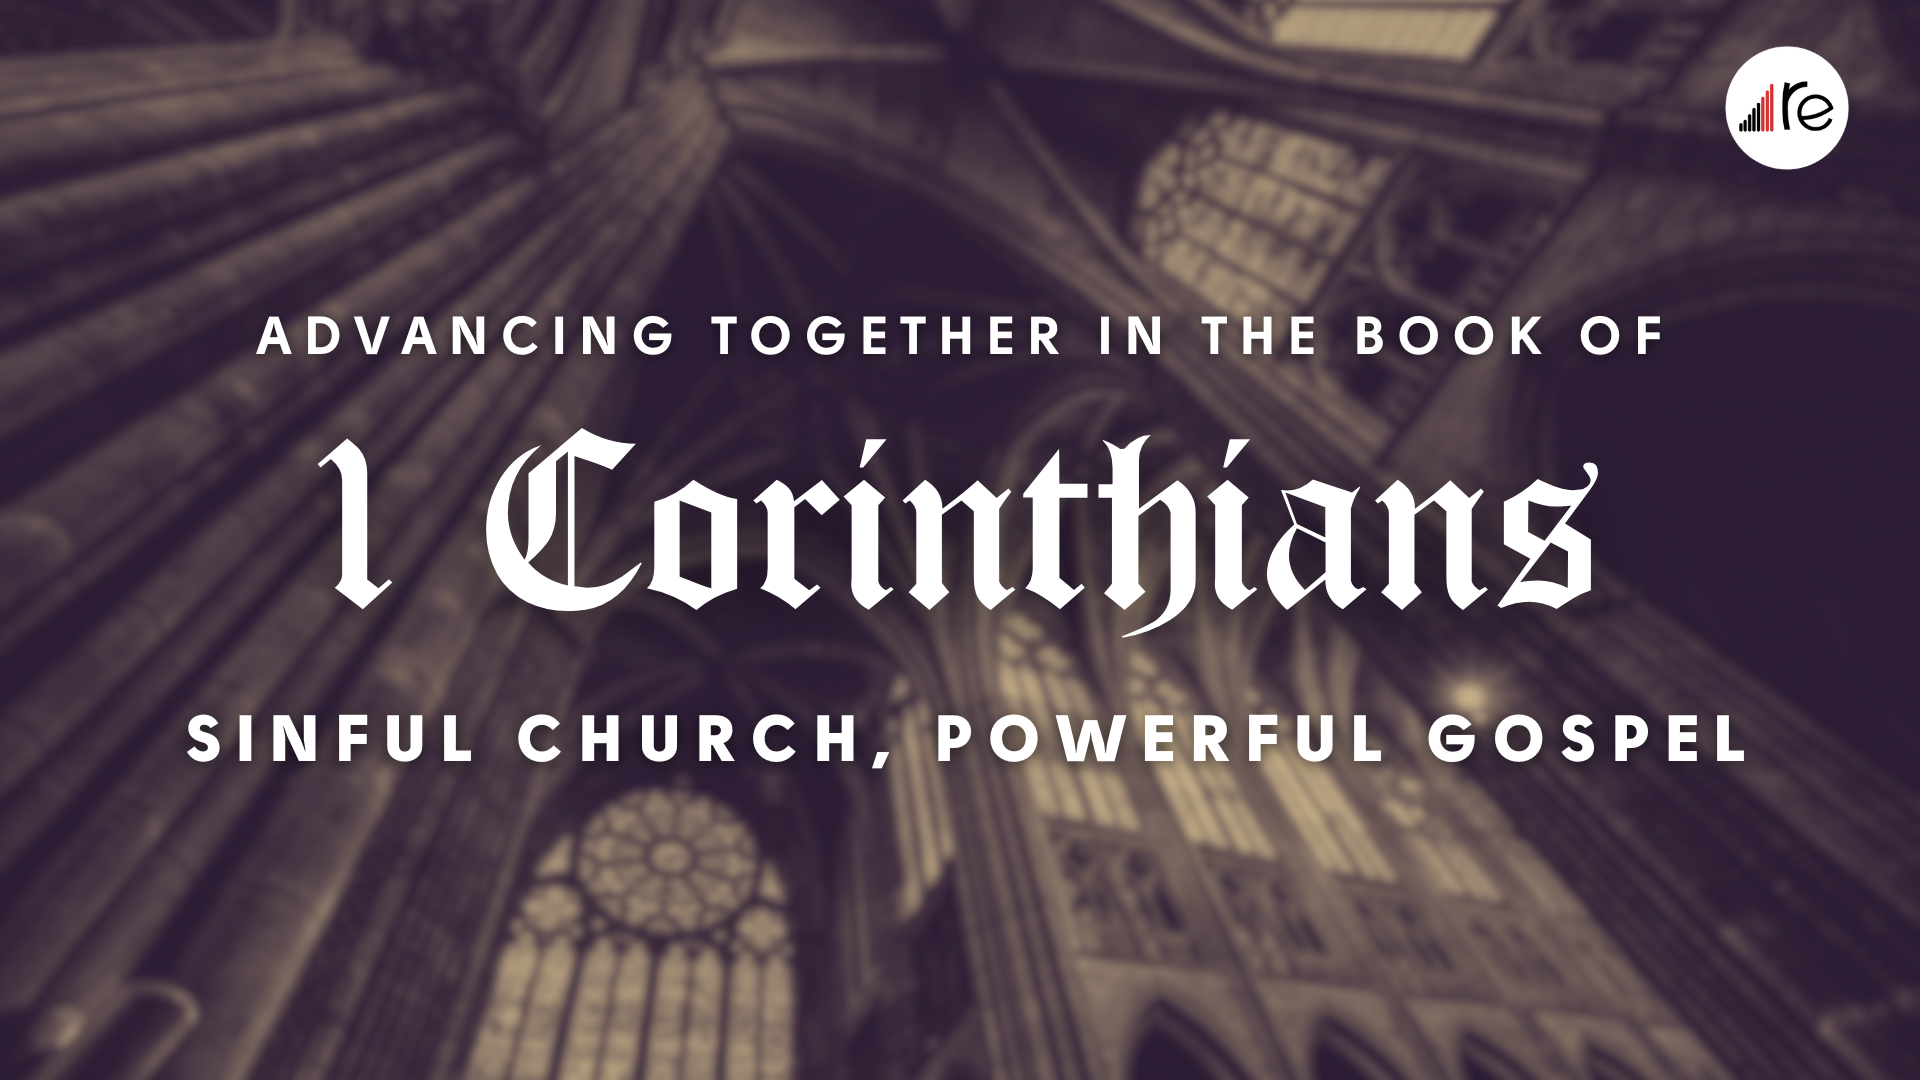 On 1 Corinthians 8, Chapel Sermon